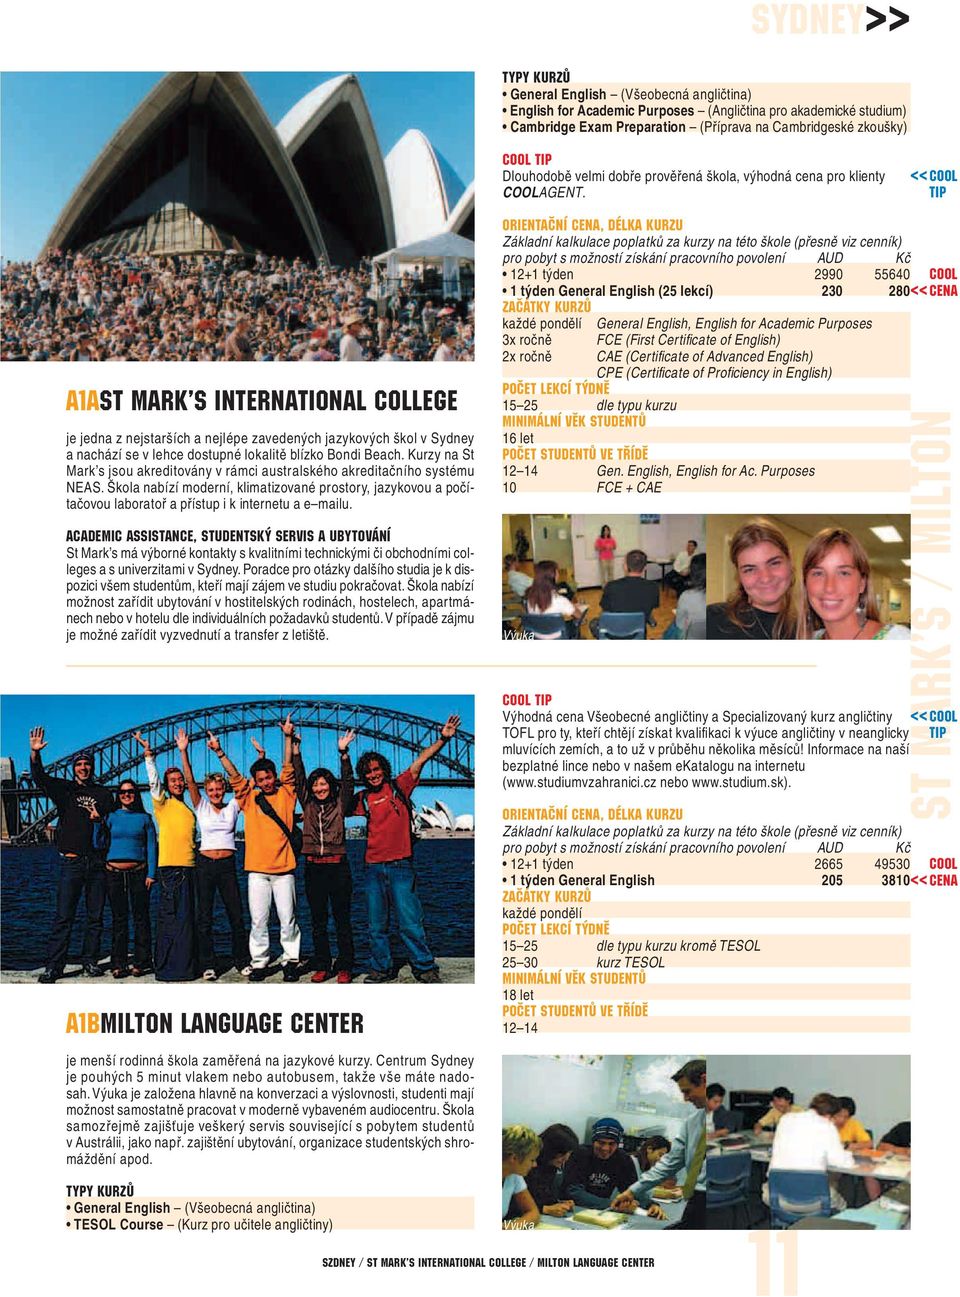 <<Cool Tip A1ASt Mark s International College je jedna z nejstarších a nejlépe zavedených jazykových škol v Sydney a nachází se v lehce dostupné lokalitě blízko Bondi Beach.